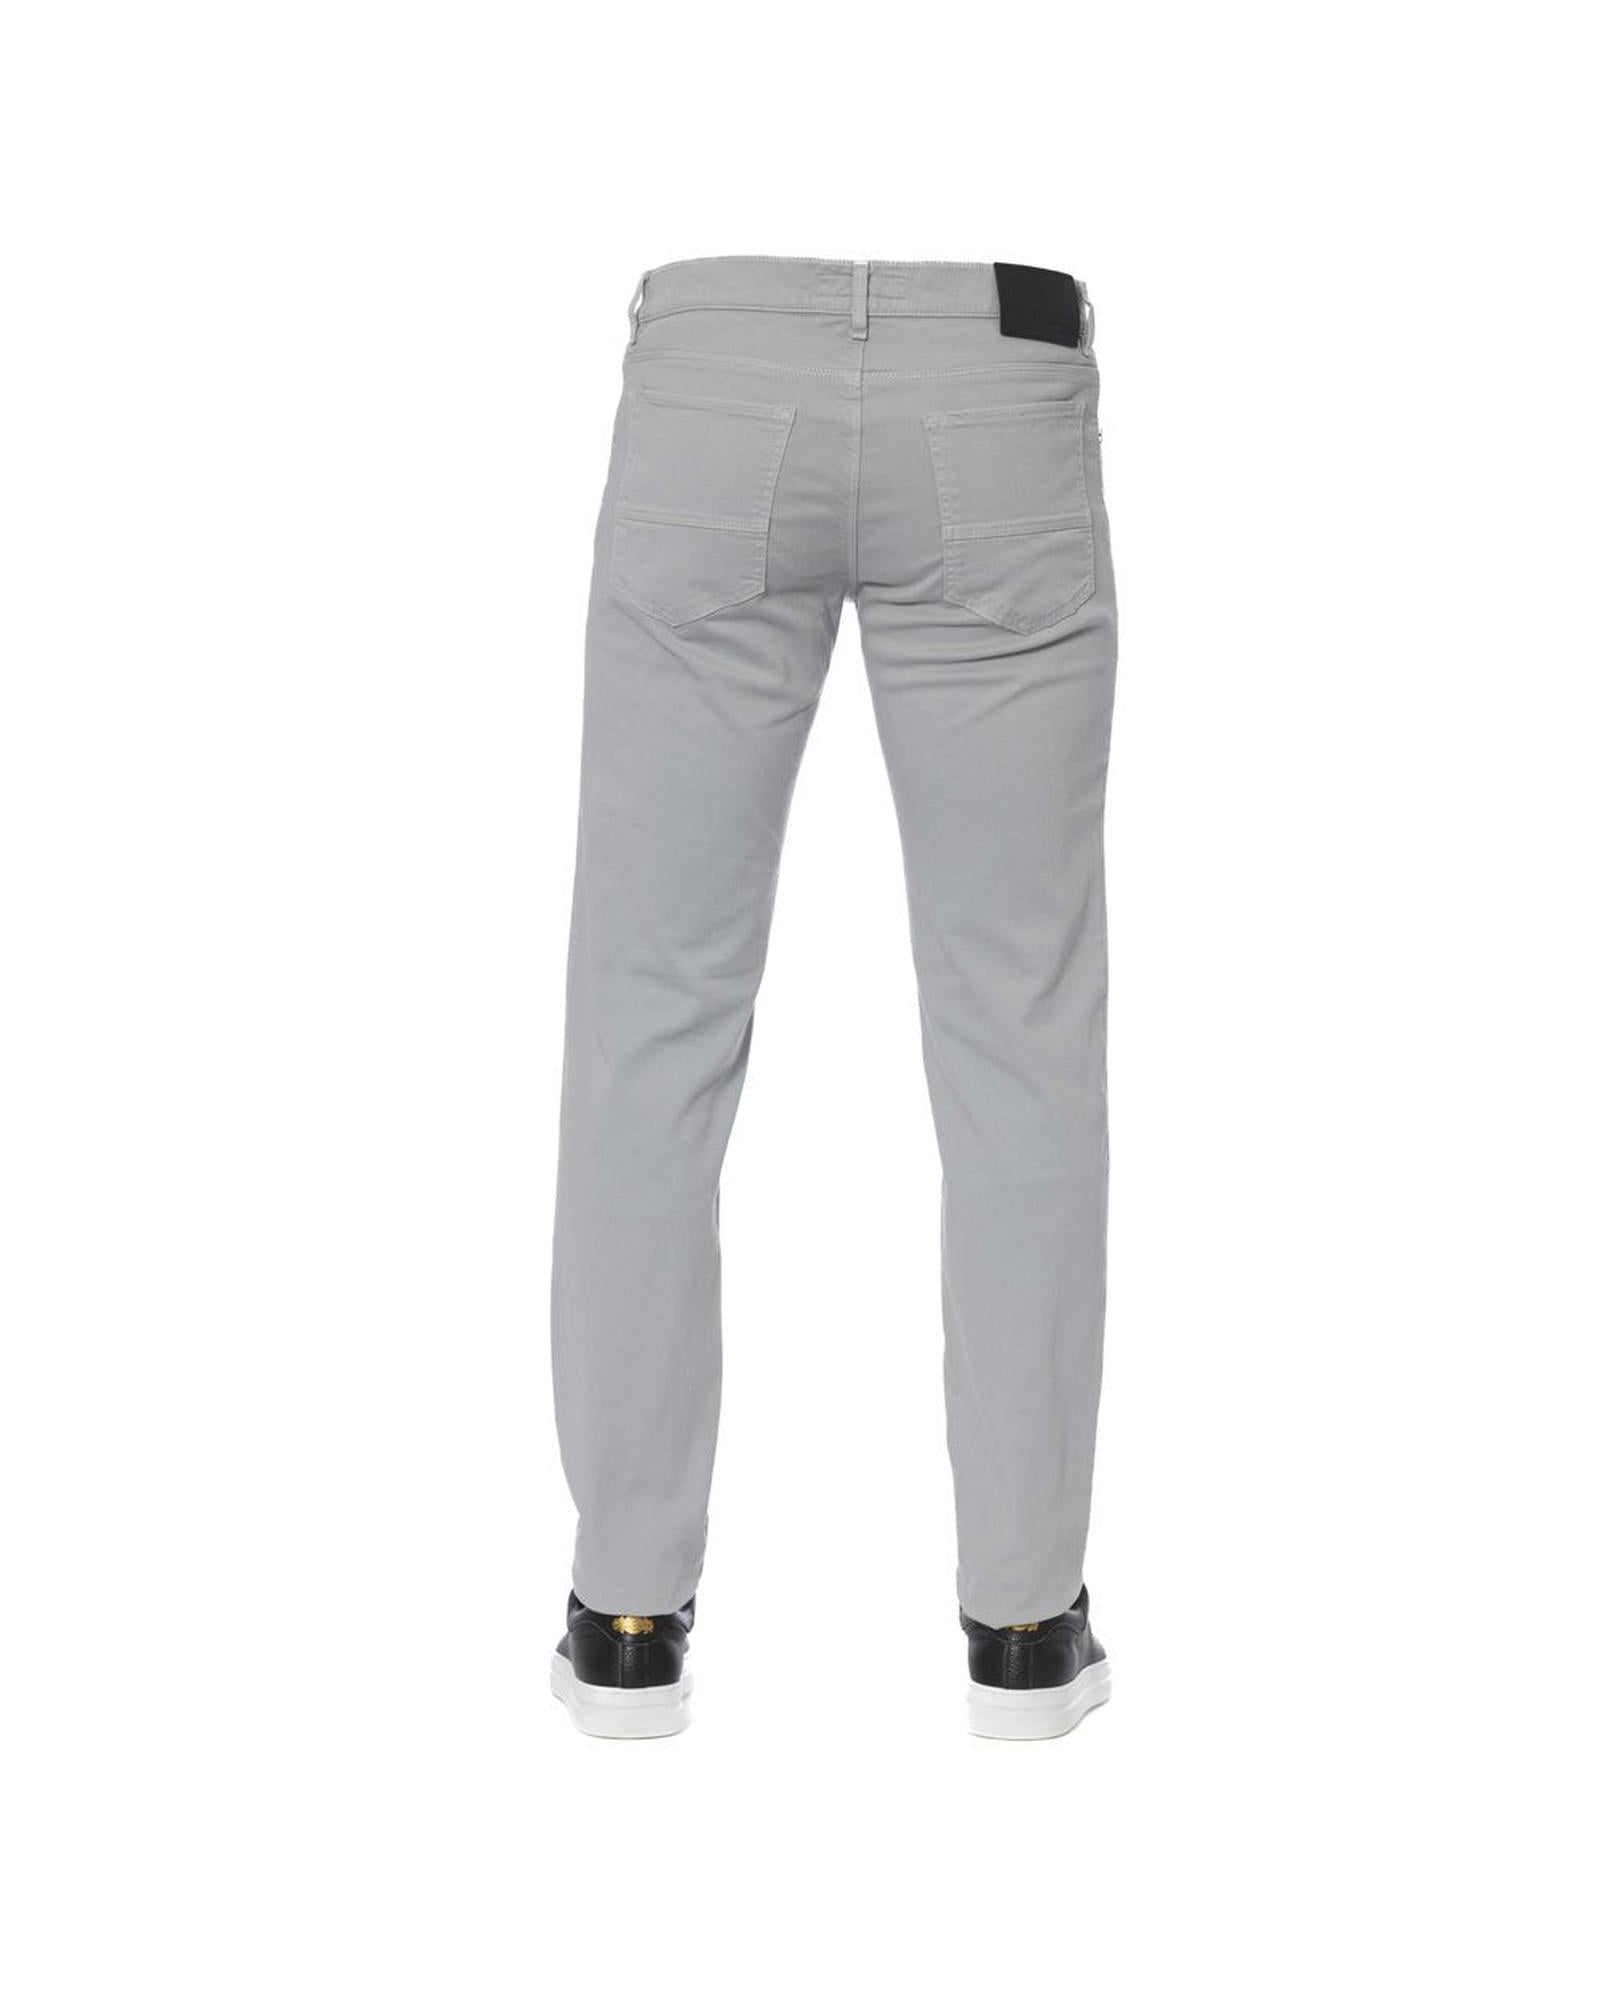 Men's Gray Cotton Jeans & Pant - W29 US